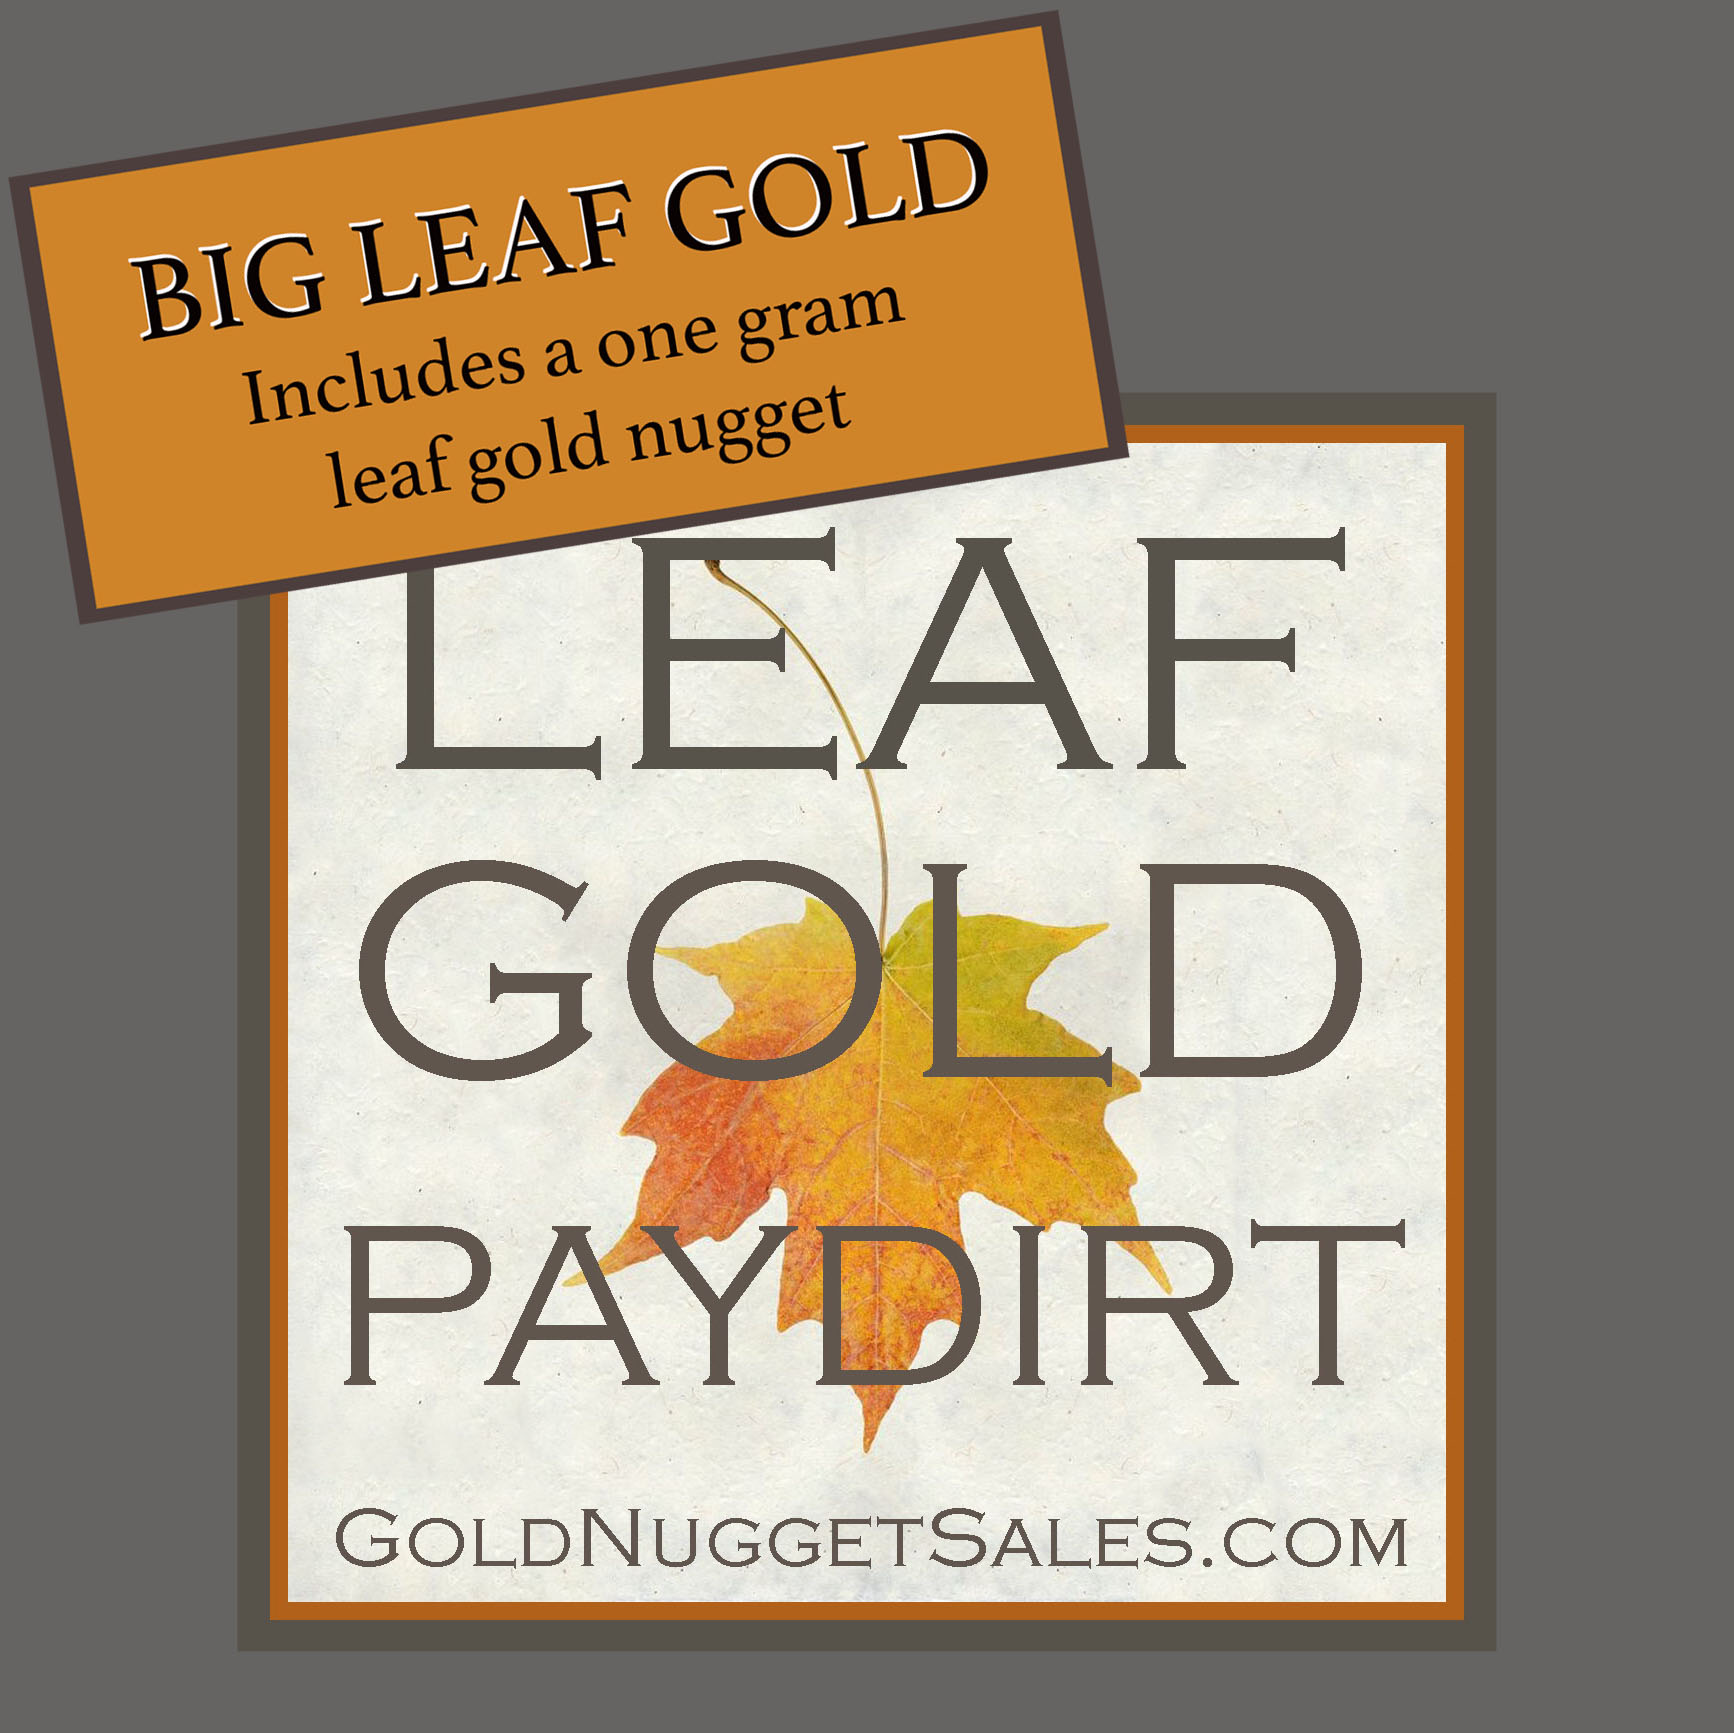 Large Leaf Gold Nuggets - Includes a 1 gram Leaf Gold Nugget